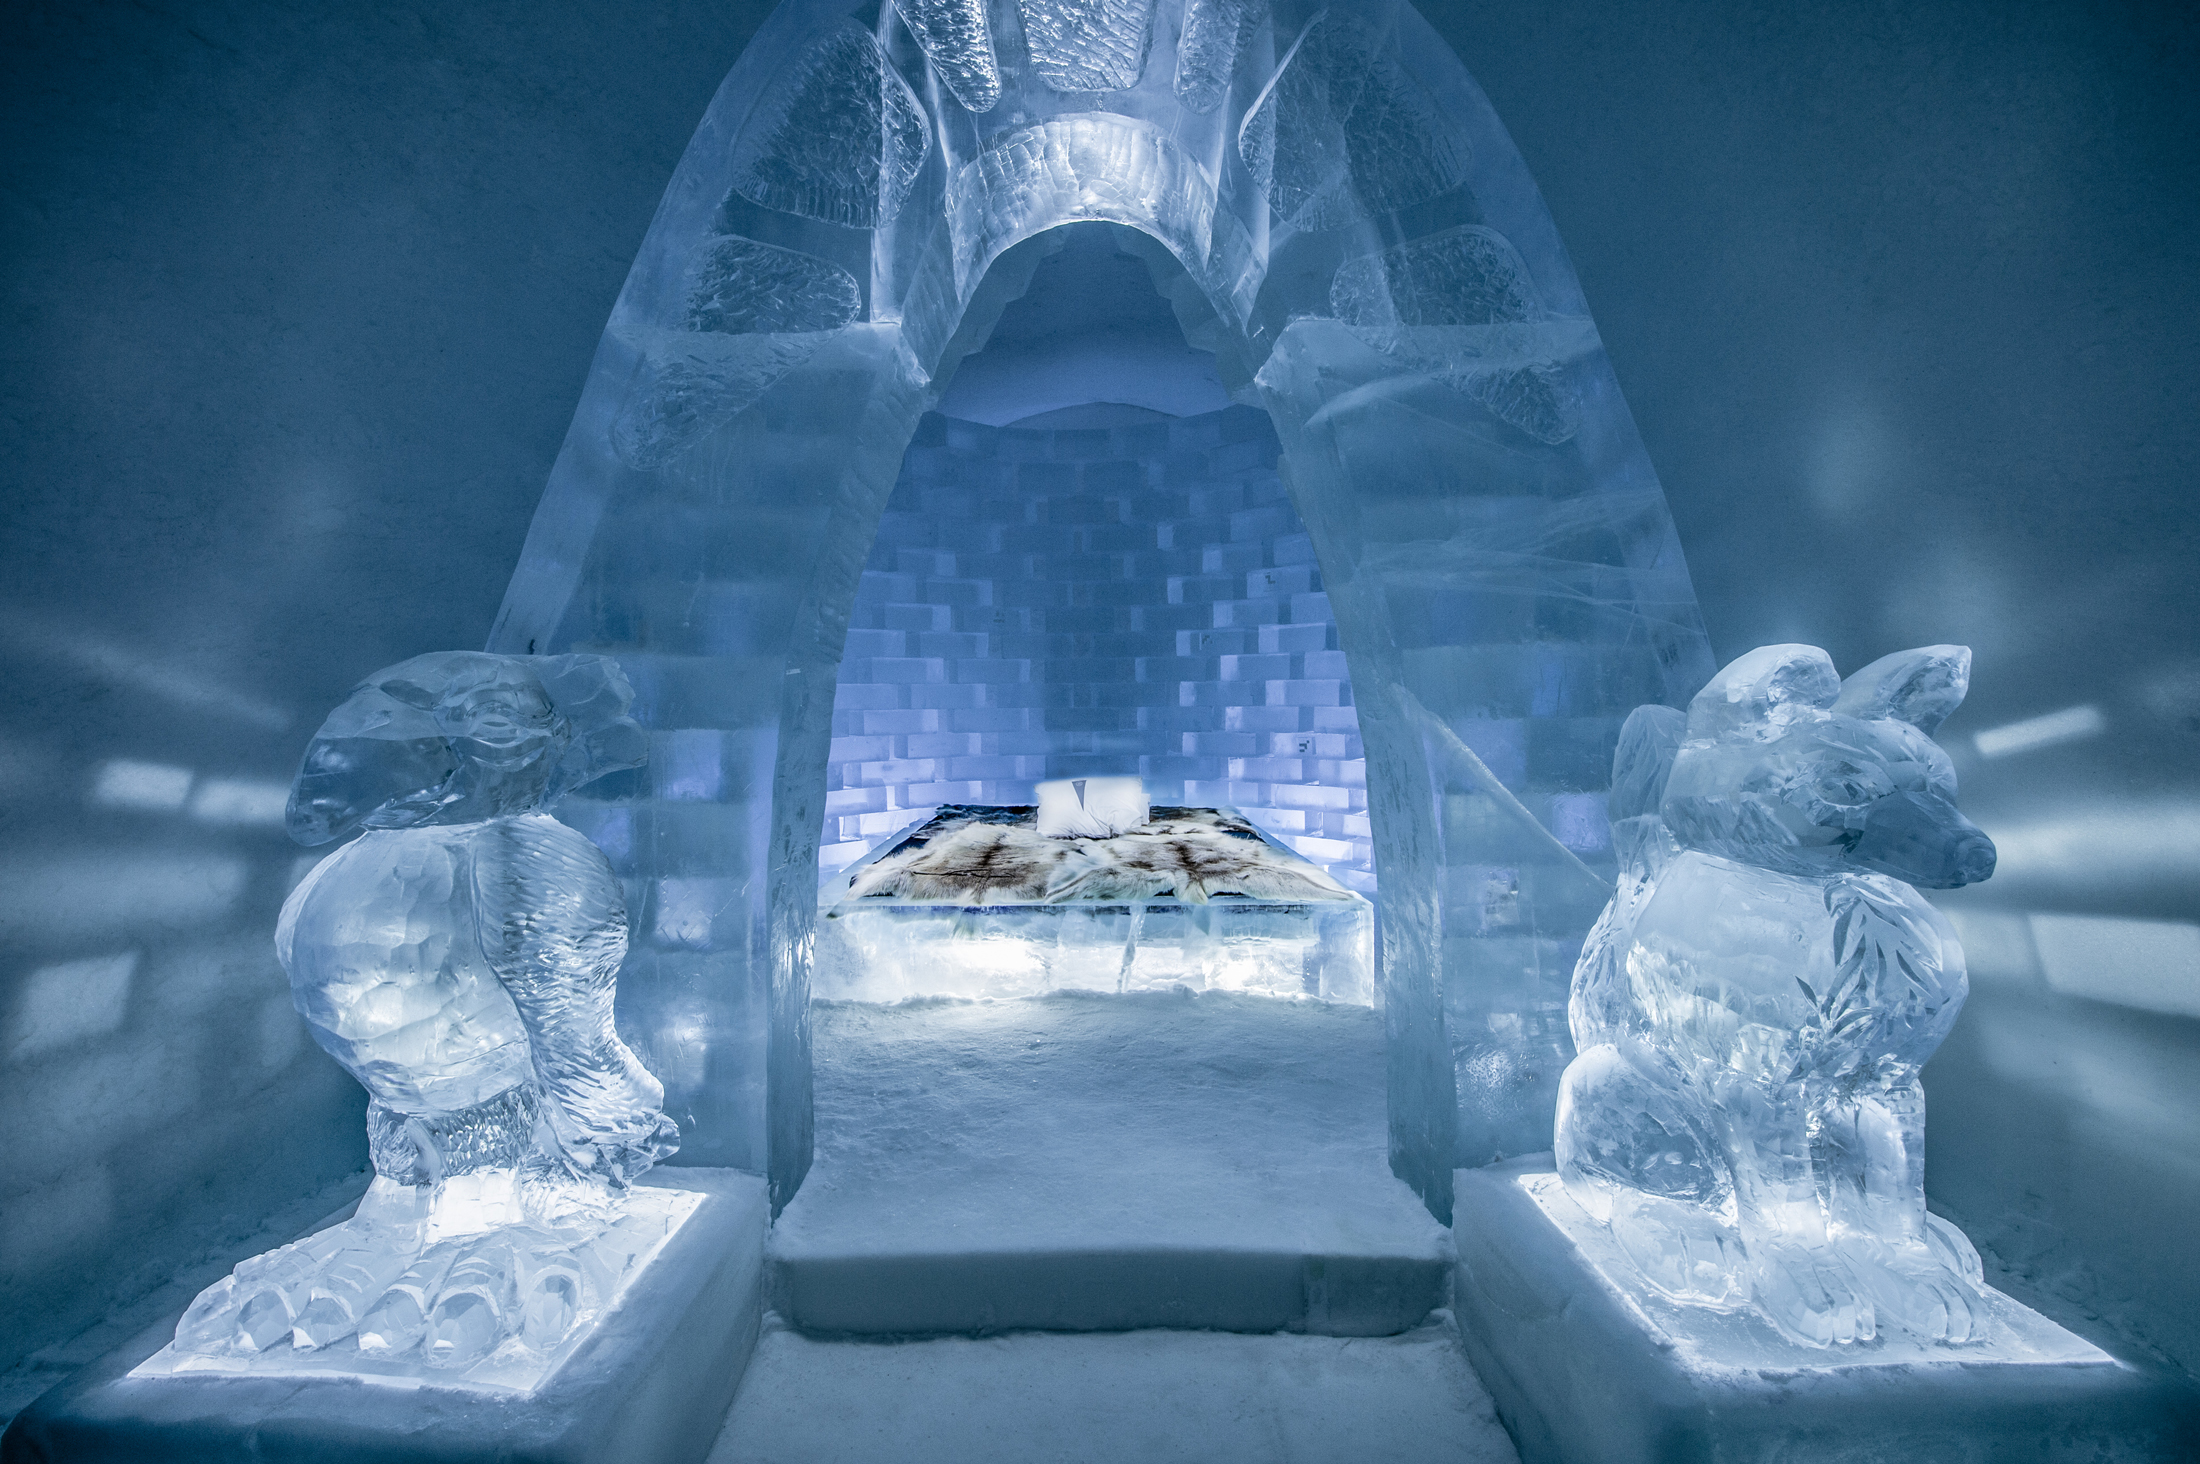 Icehotel, Sweden